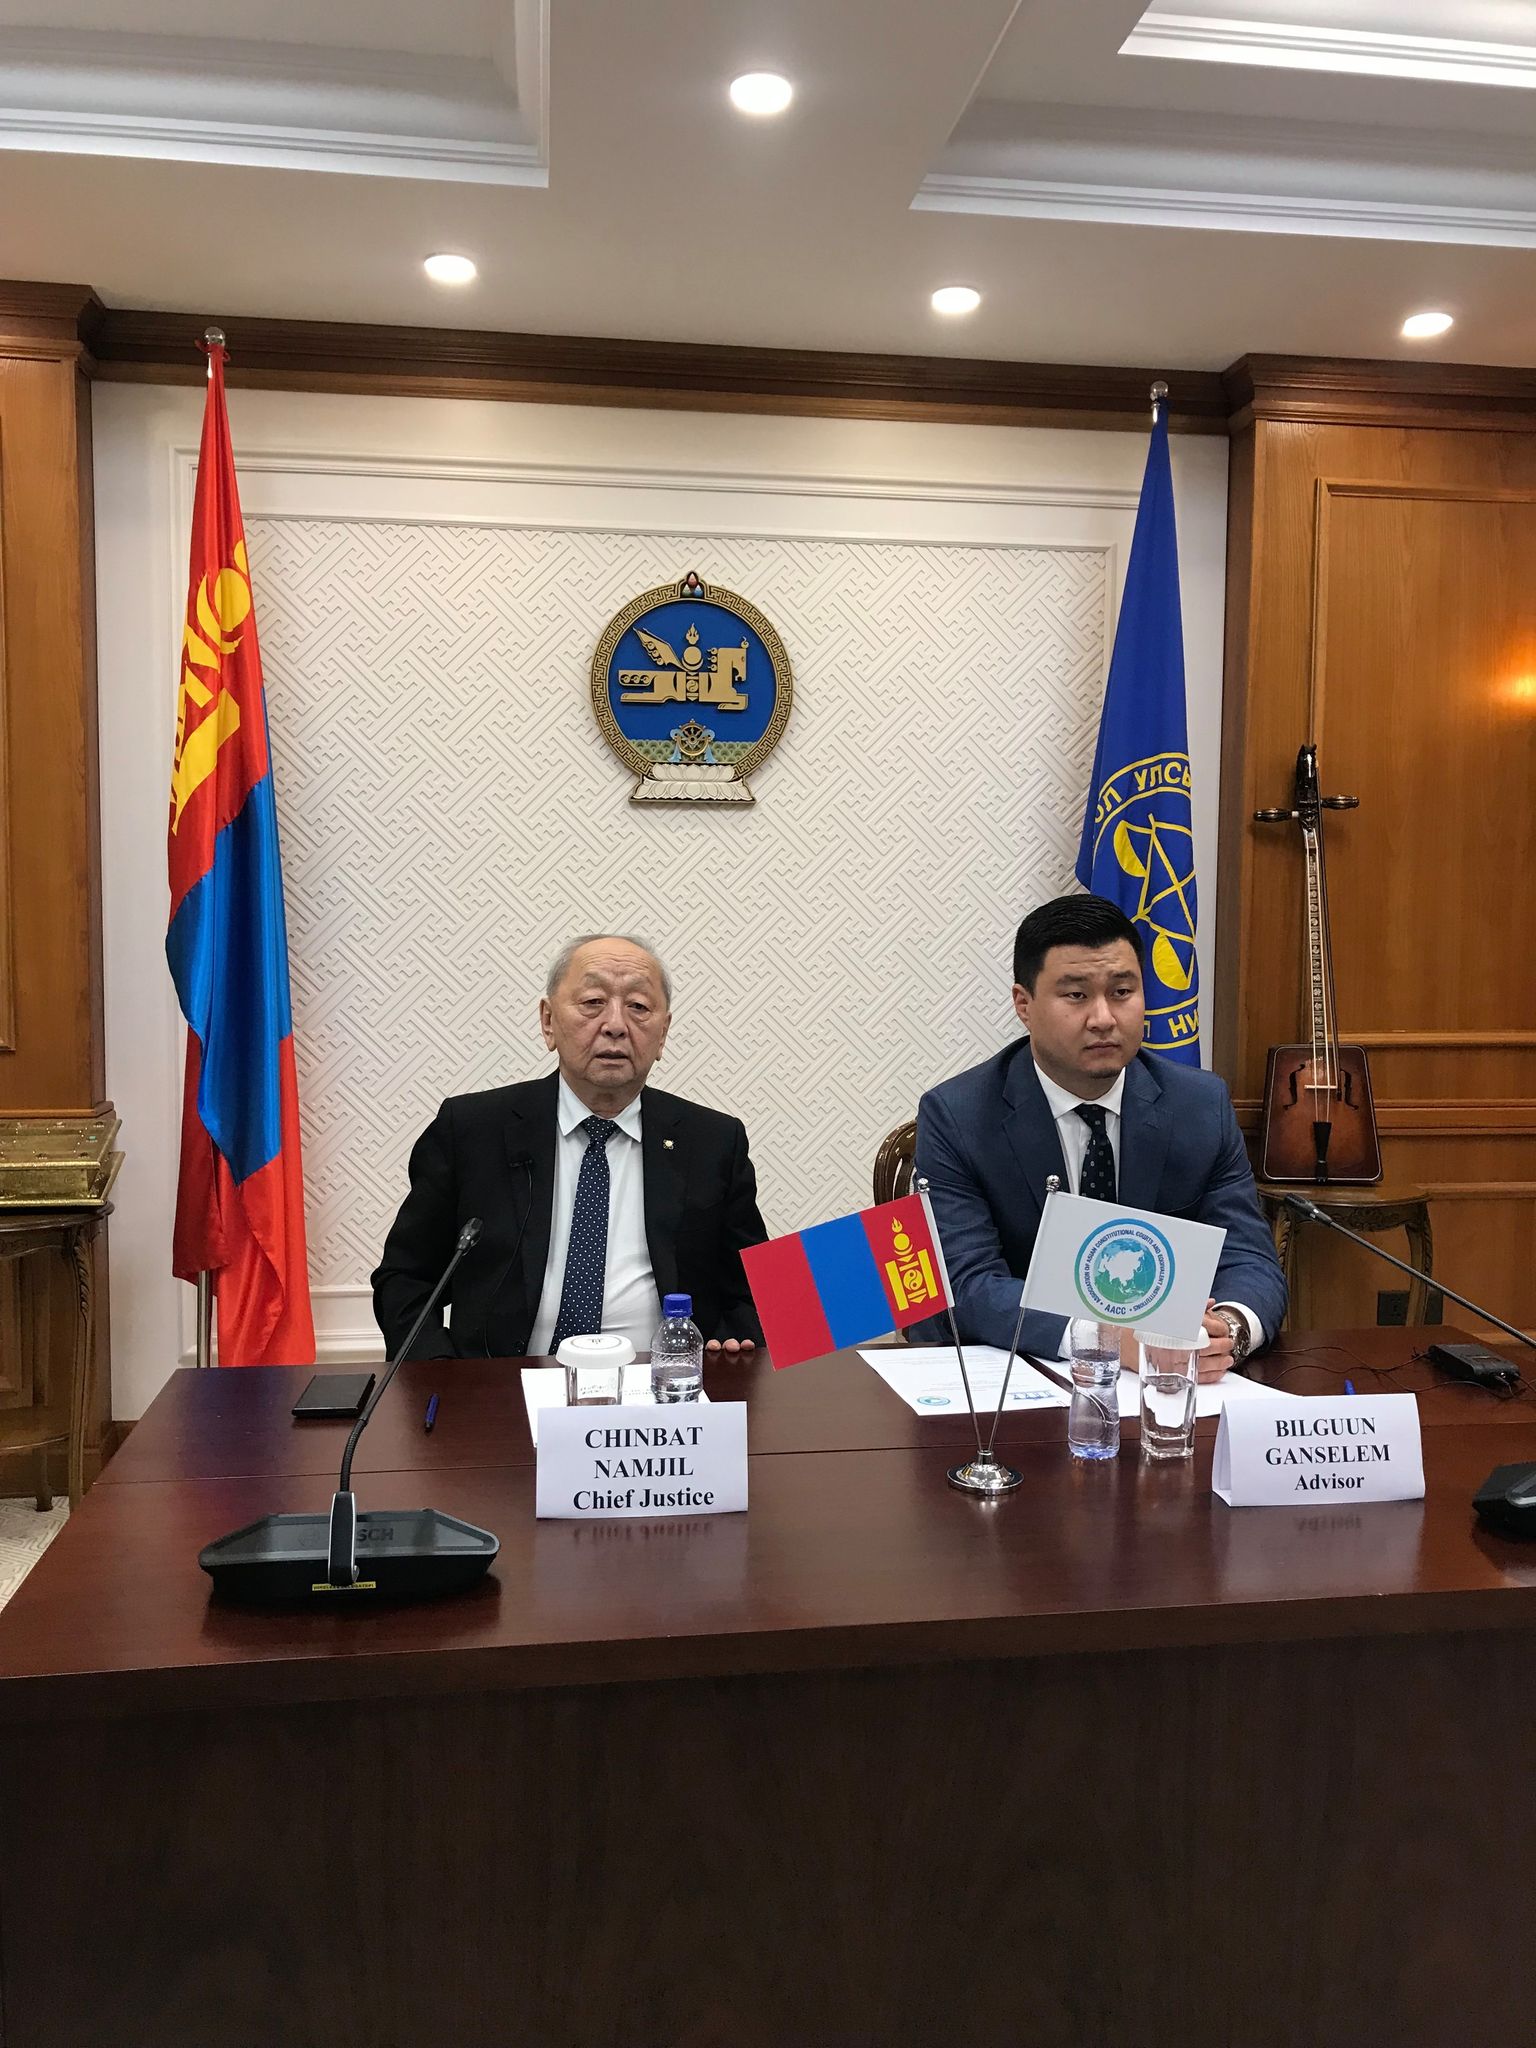 몽골 헌법재판소는 권위 있는 국제기구의 의장직을 맡아.jpg